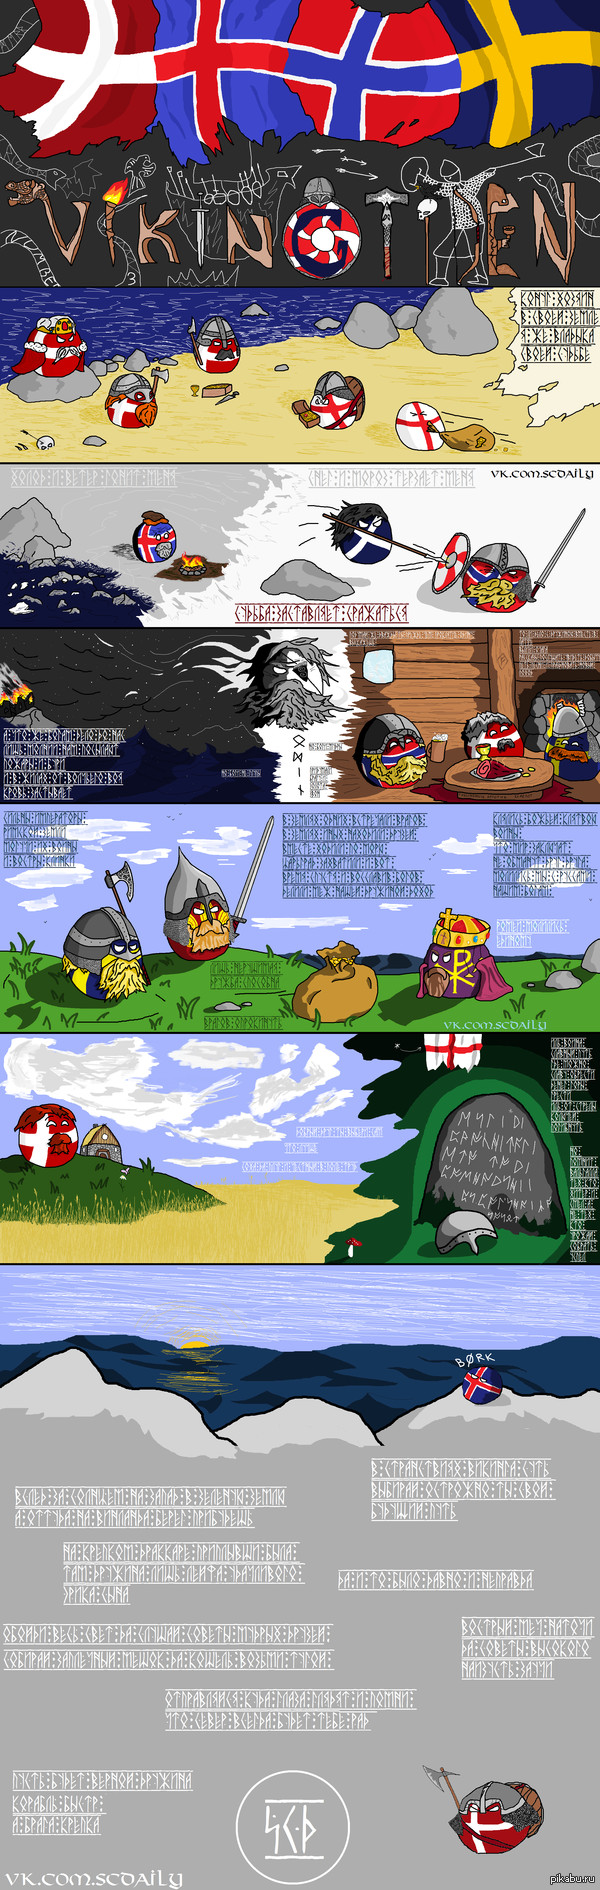 Vikingtiden 3-   "Vikingtiden".  ;)